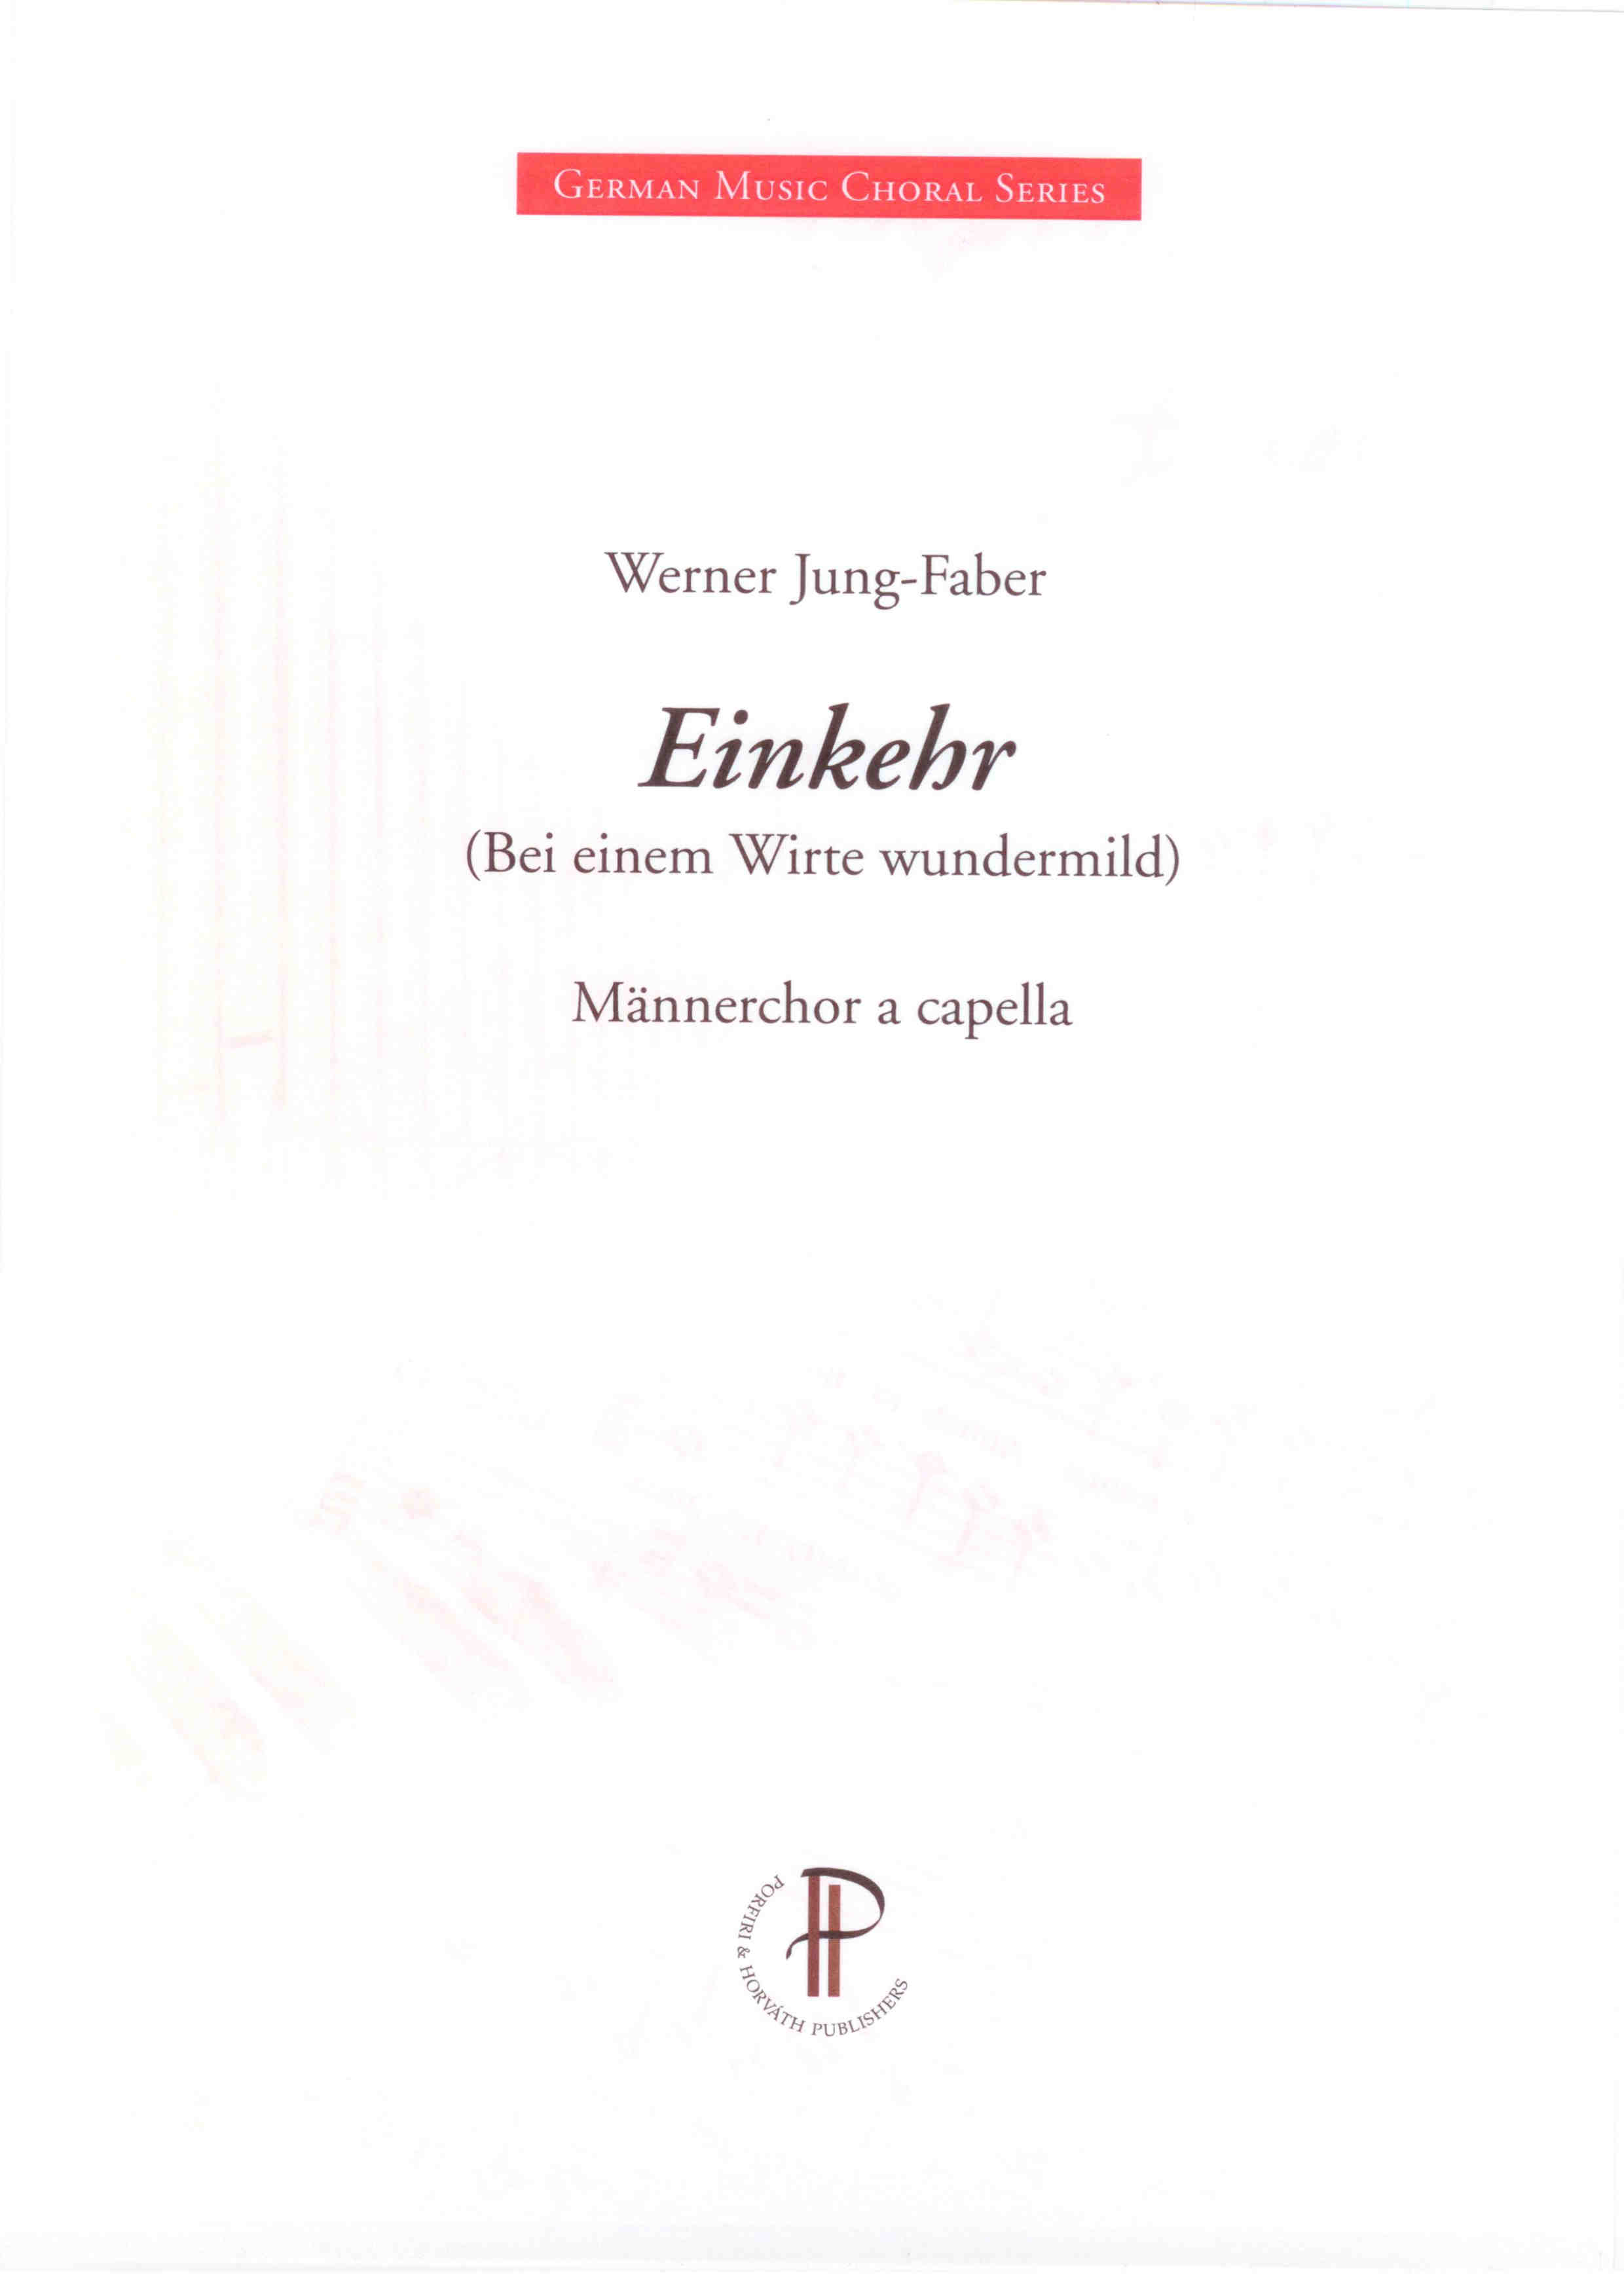 Einkehr - Show sample score